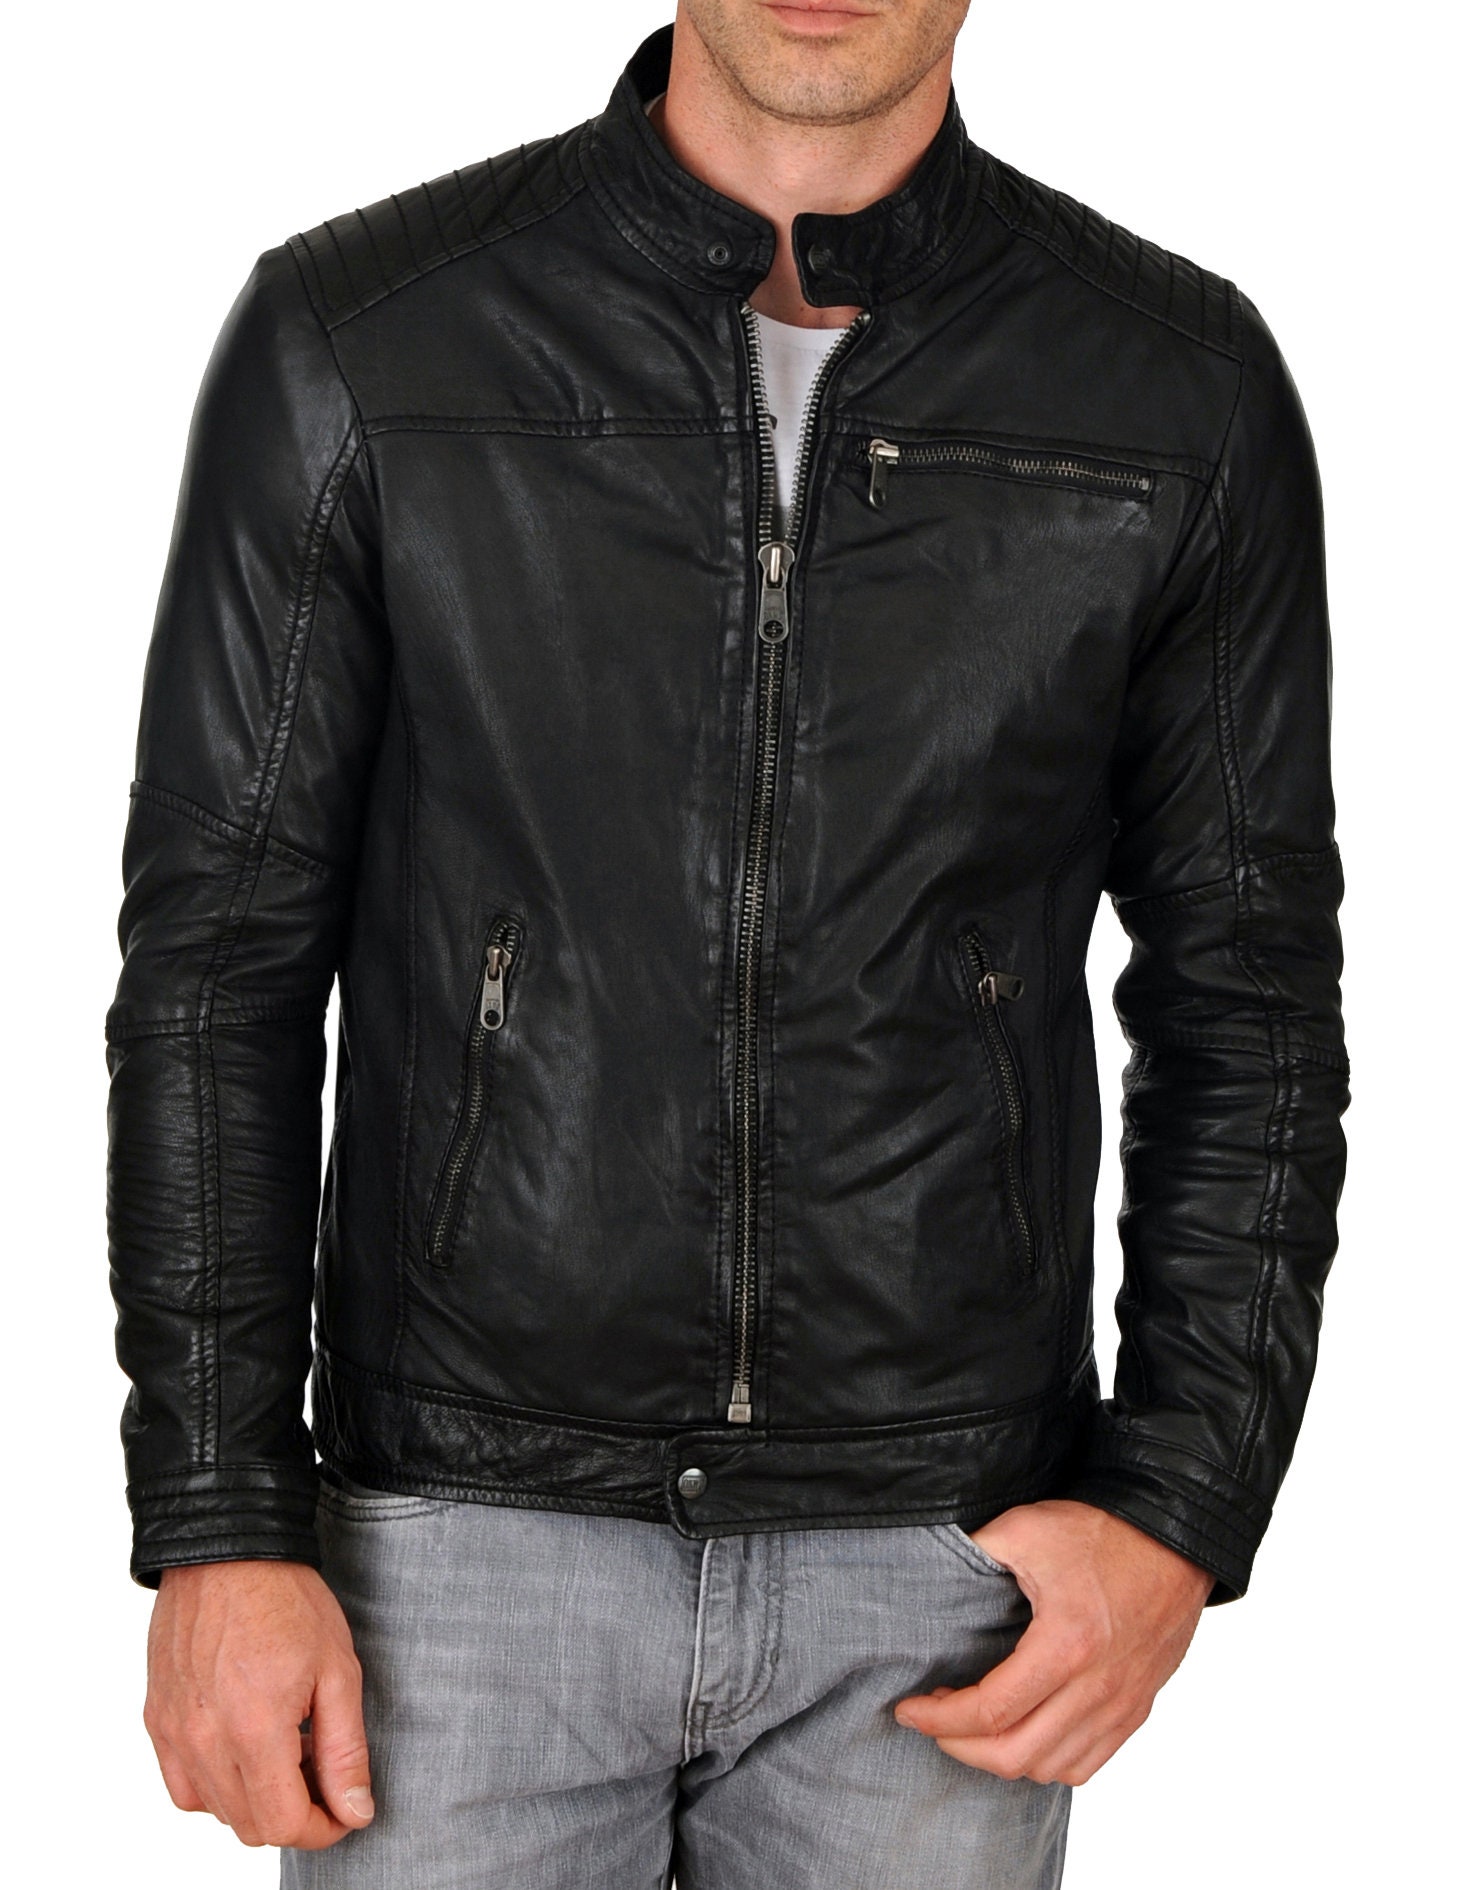 High Glamor Men's Leather Jacket Stylish Handmade | Etsy